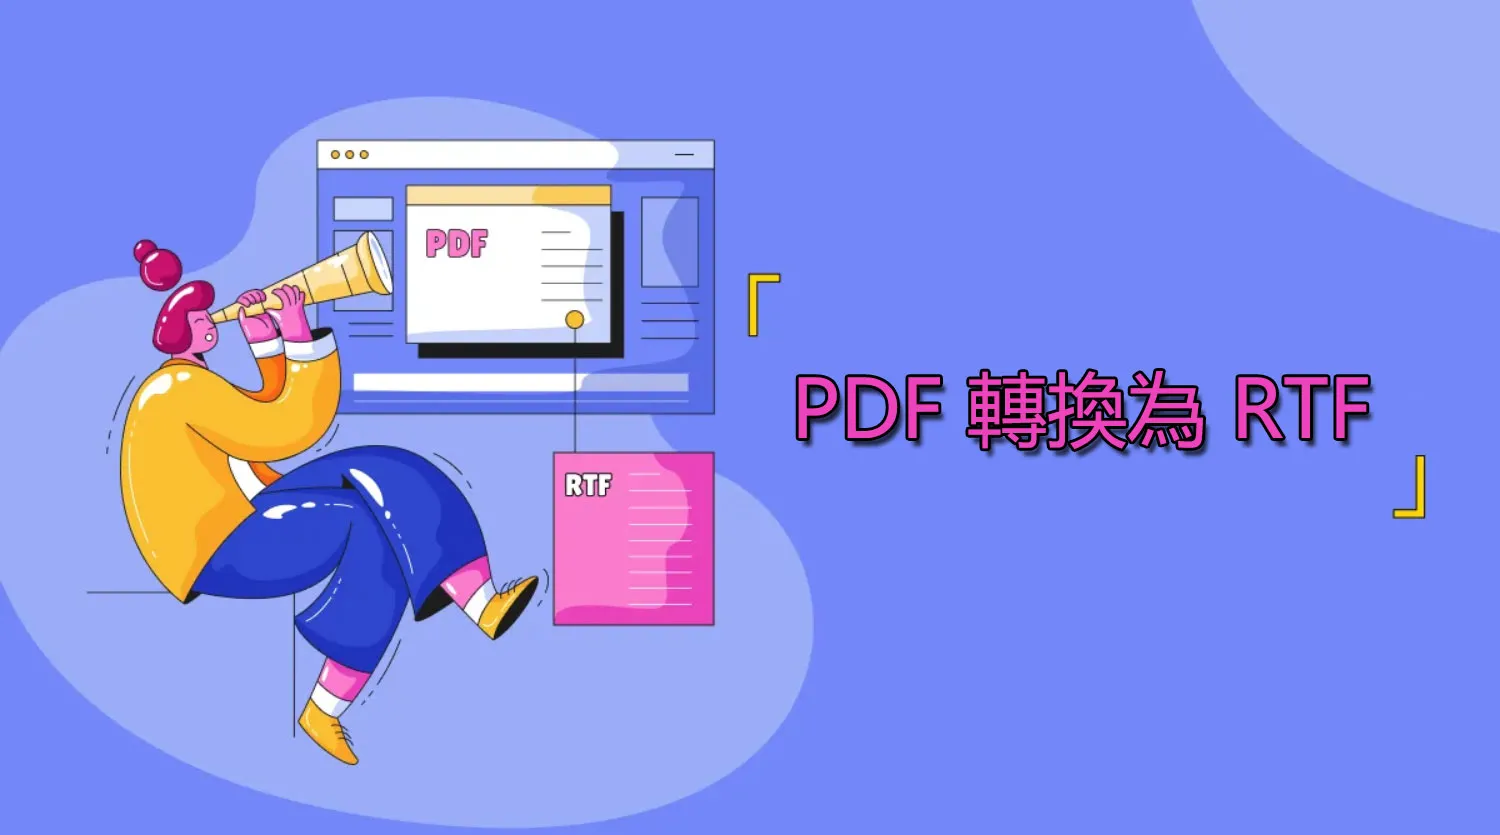 輕鬆將 PDF 轉換為 RTF 格式的方法